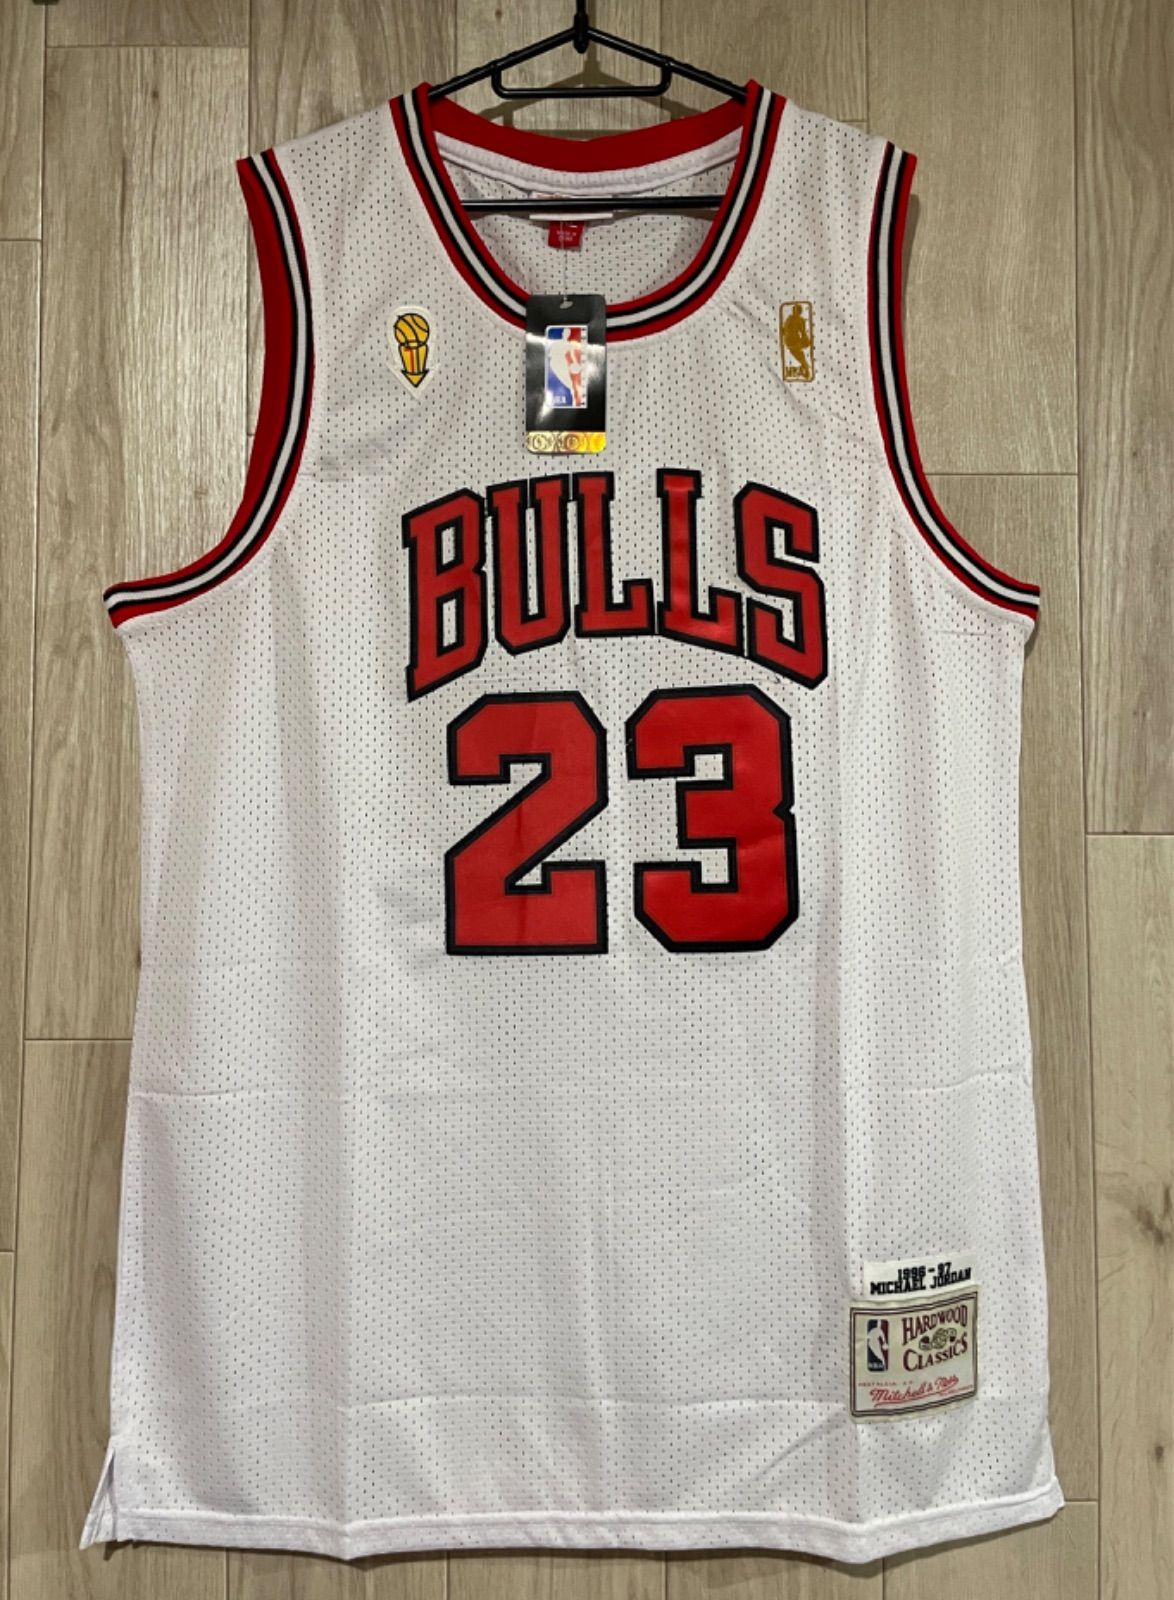 NBA BULLS JORDAN #23 マイケル・ジョーダン/シカゴ・ブルズ